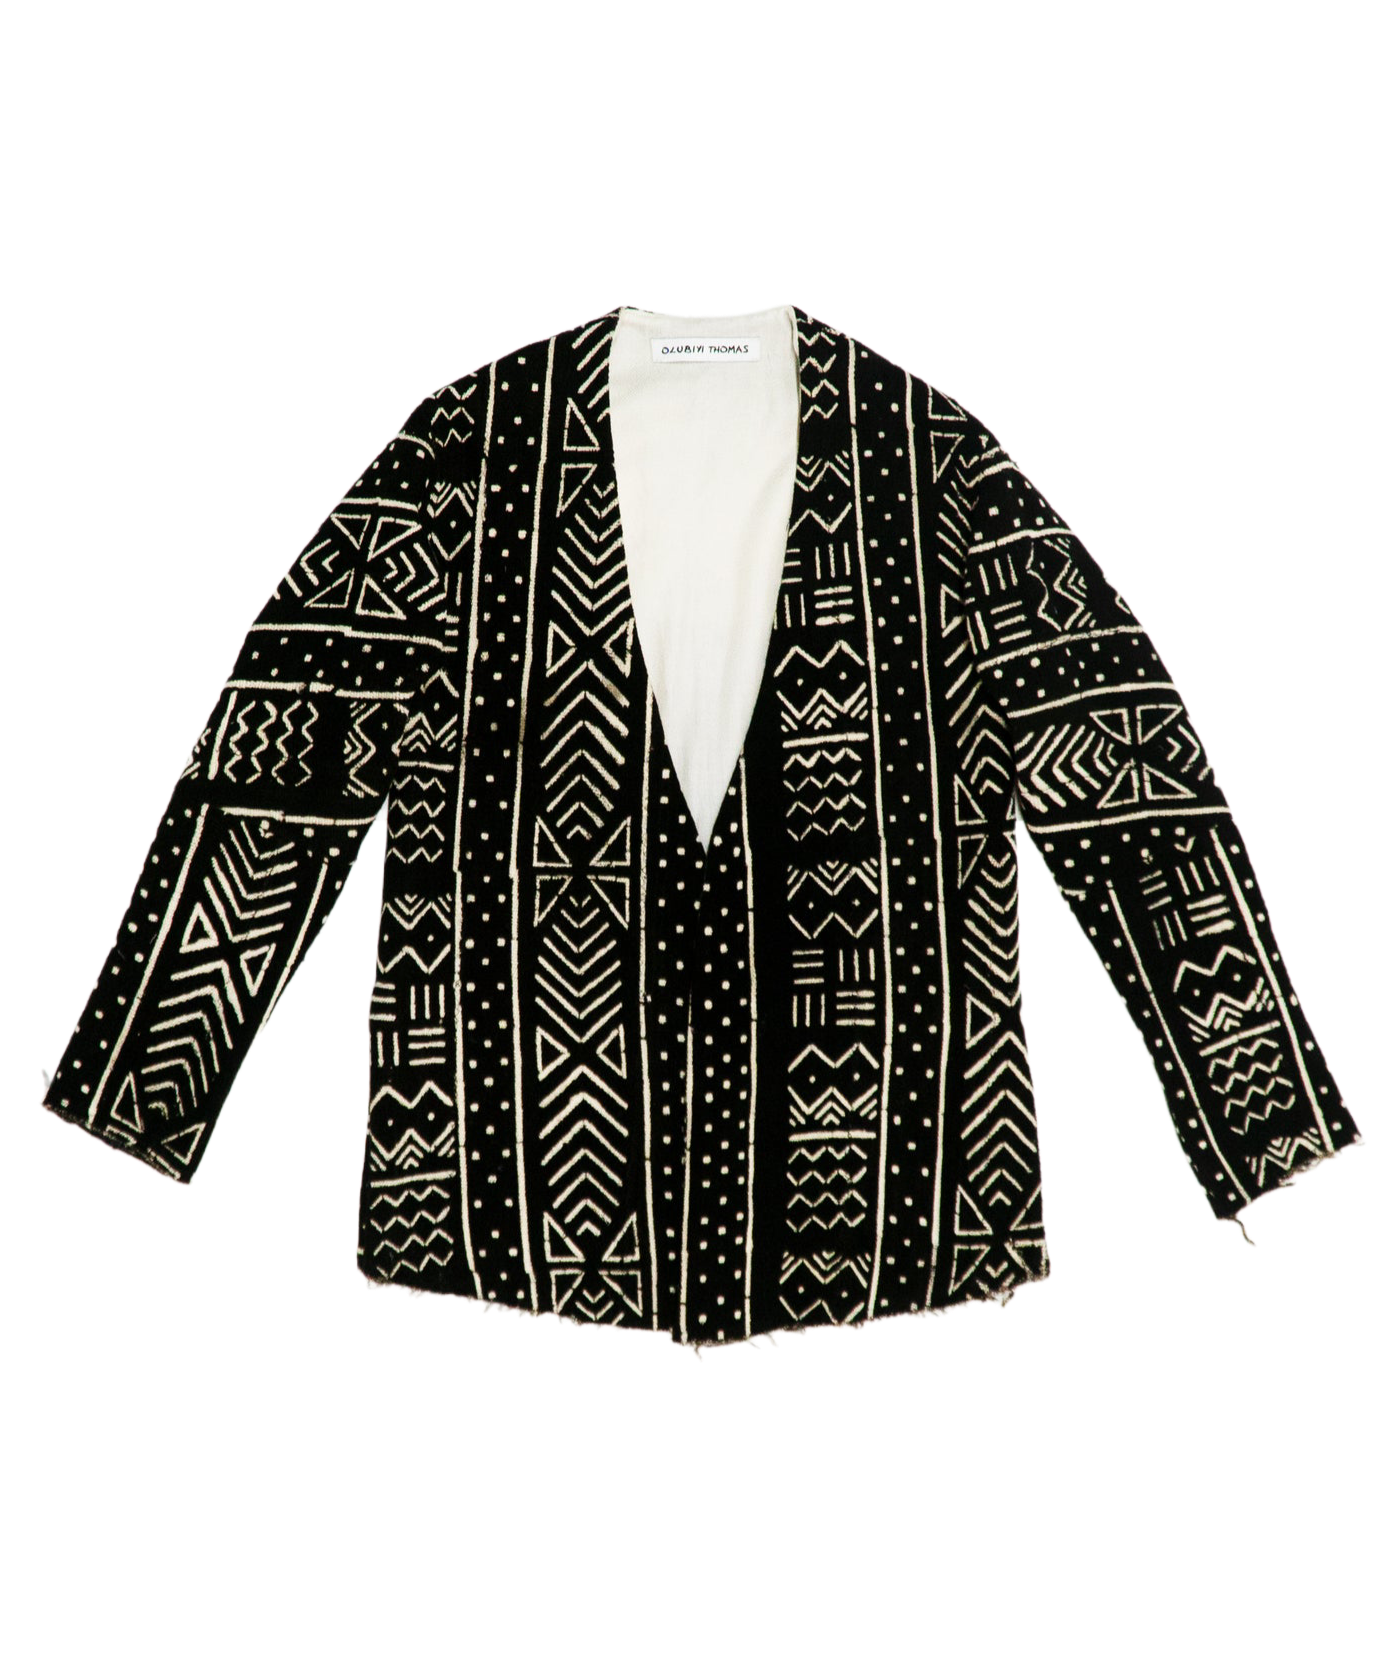 Kimono Back Cardigan in Black Mali Mud Cloth Cotton